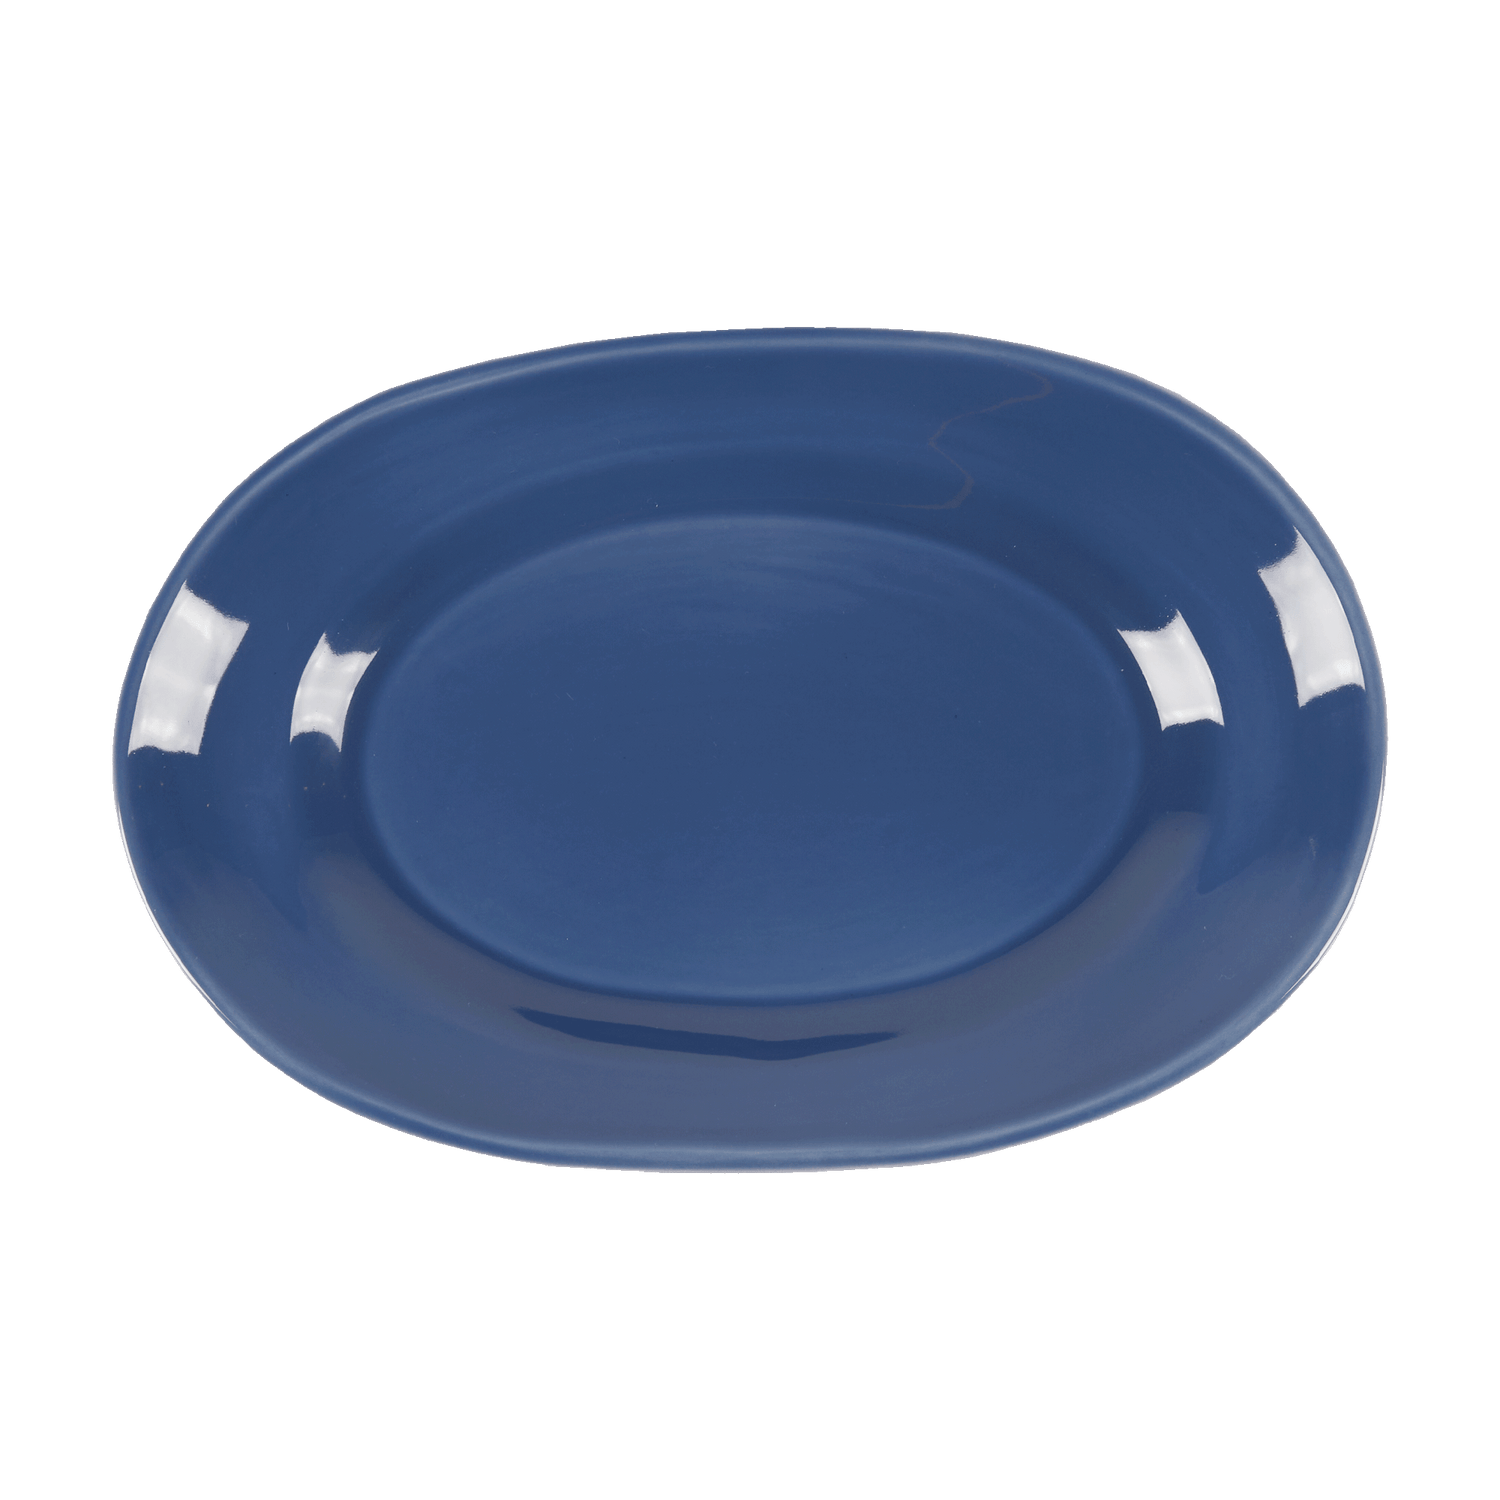 Classic serving plate - Dark blue 38 cm